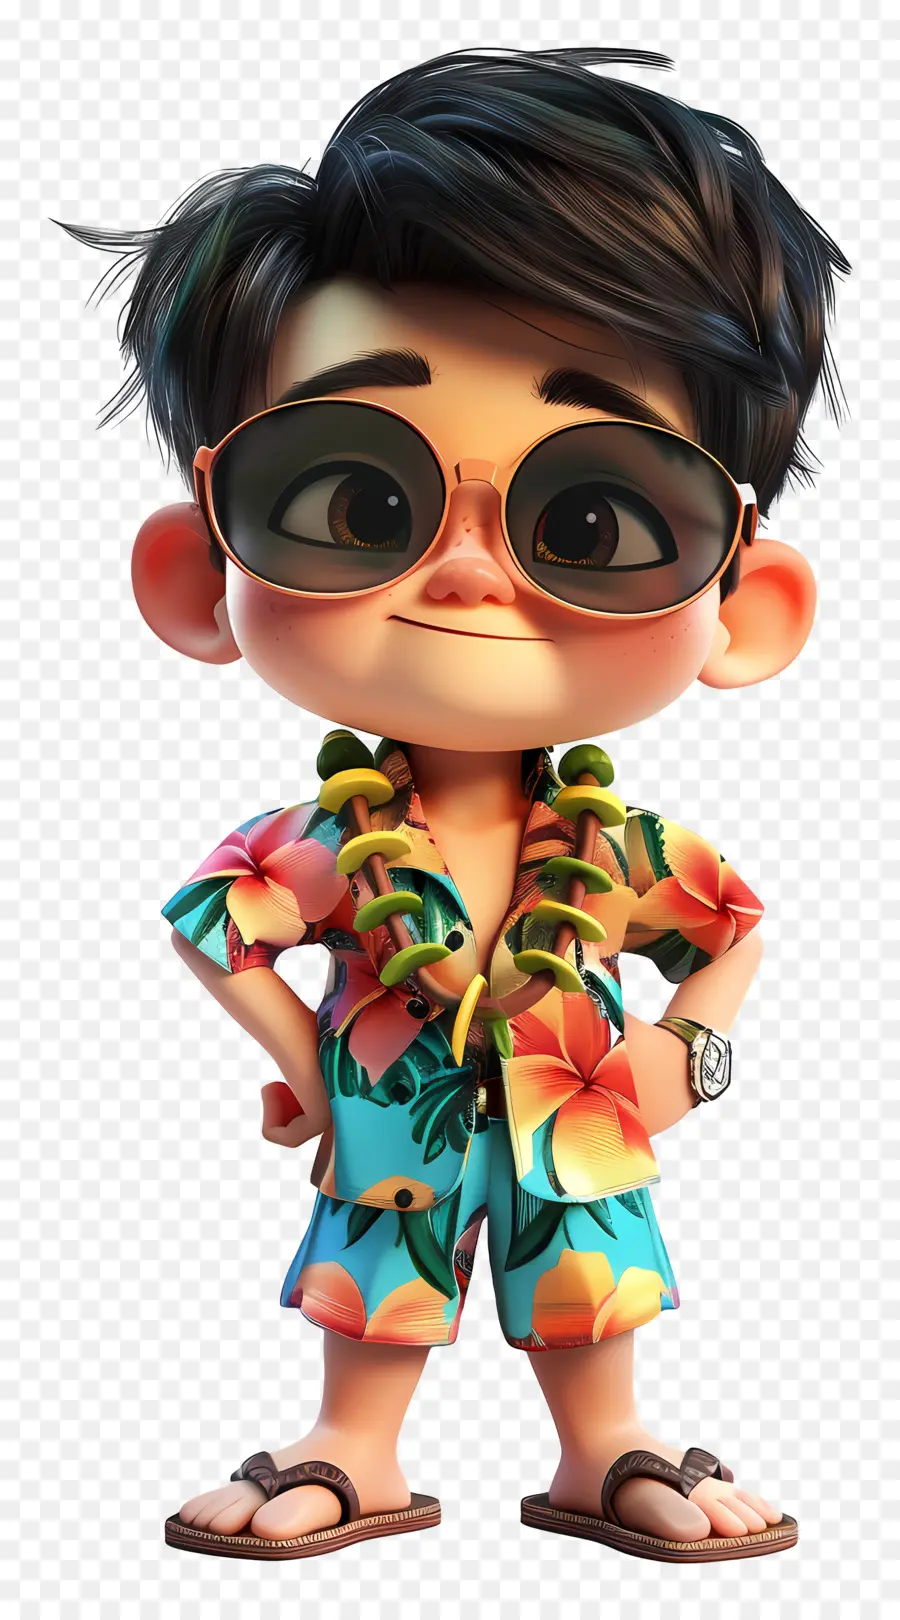 Hawaii Boy hoạt hình Phim hoạt hình Hawaii Kính râm người đàn ông thời trang - Người đàn ông mặc kính râm và áo sơ mi Hawaii tạo dáng